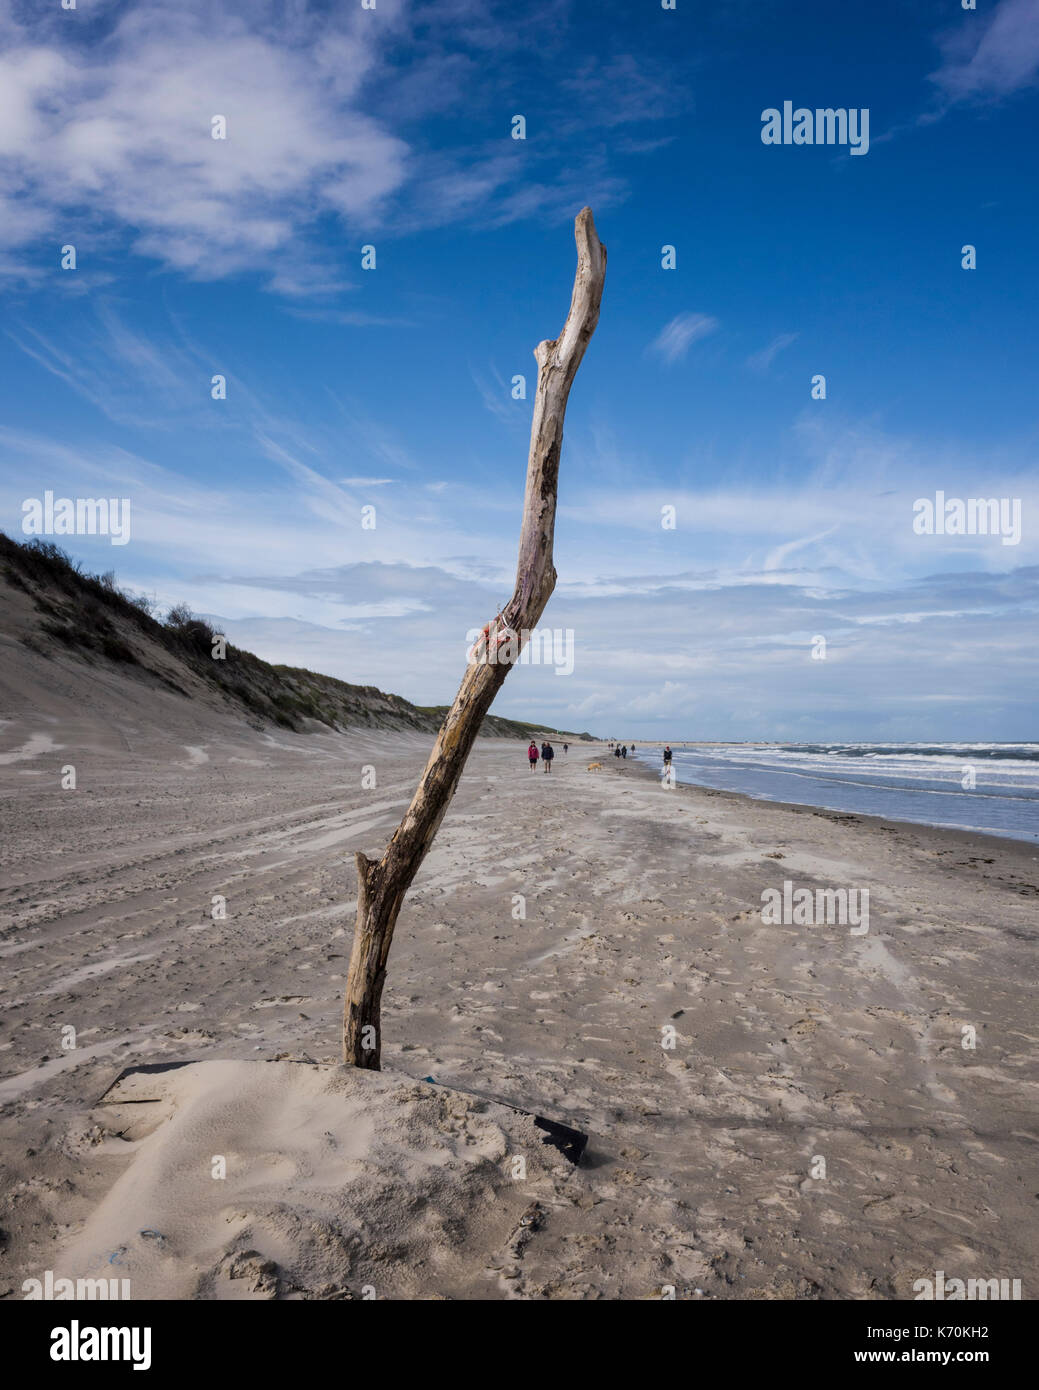 Am Strand, Langeoog. Deutschland. Germania. Un pezzo di driftwood, impostare nella sabbia, domina la spiaggia come turisti a piedi lungo la spiaggia approccio. Si tratta di un luminoso giorno di avvolgimento con alcuni in rapido movimento di nuvole nel cielo. Foto Stock